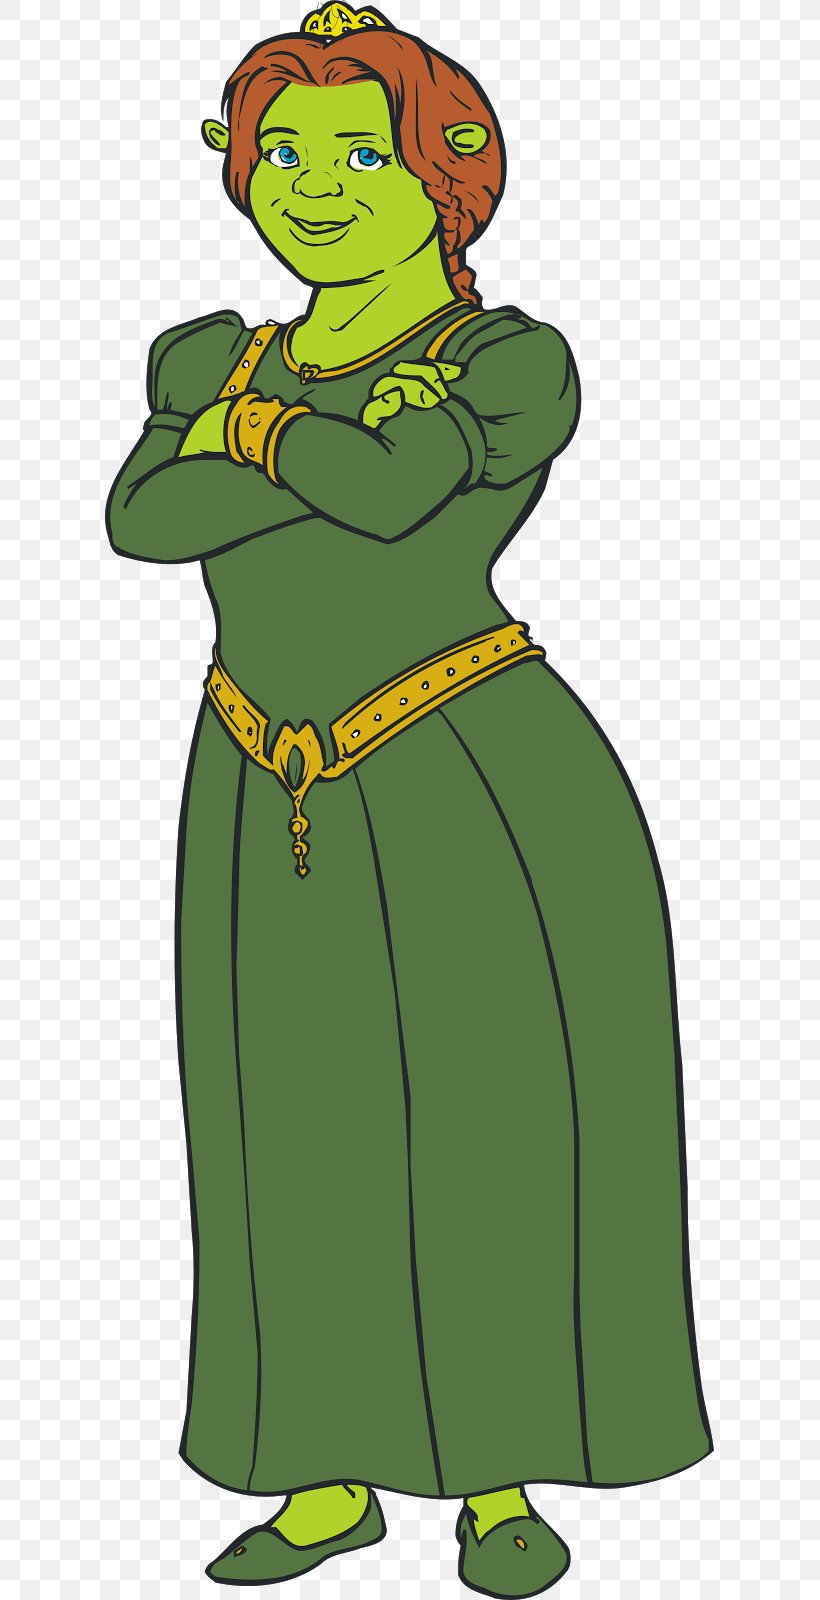 Princess Fiona Shrek Cartoon